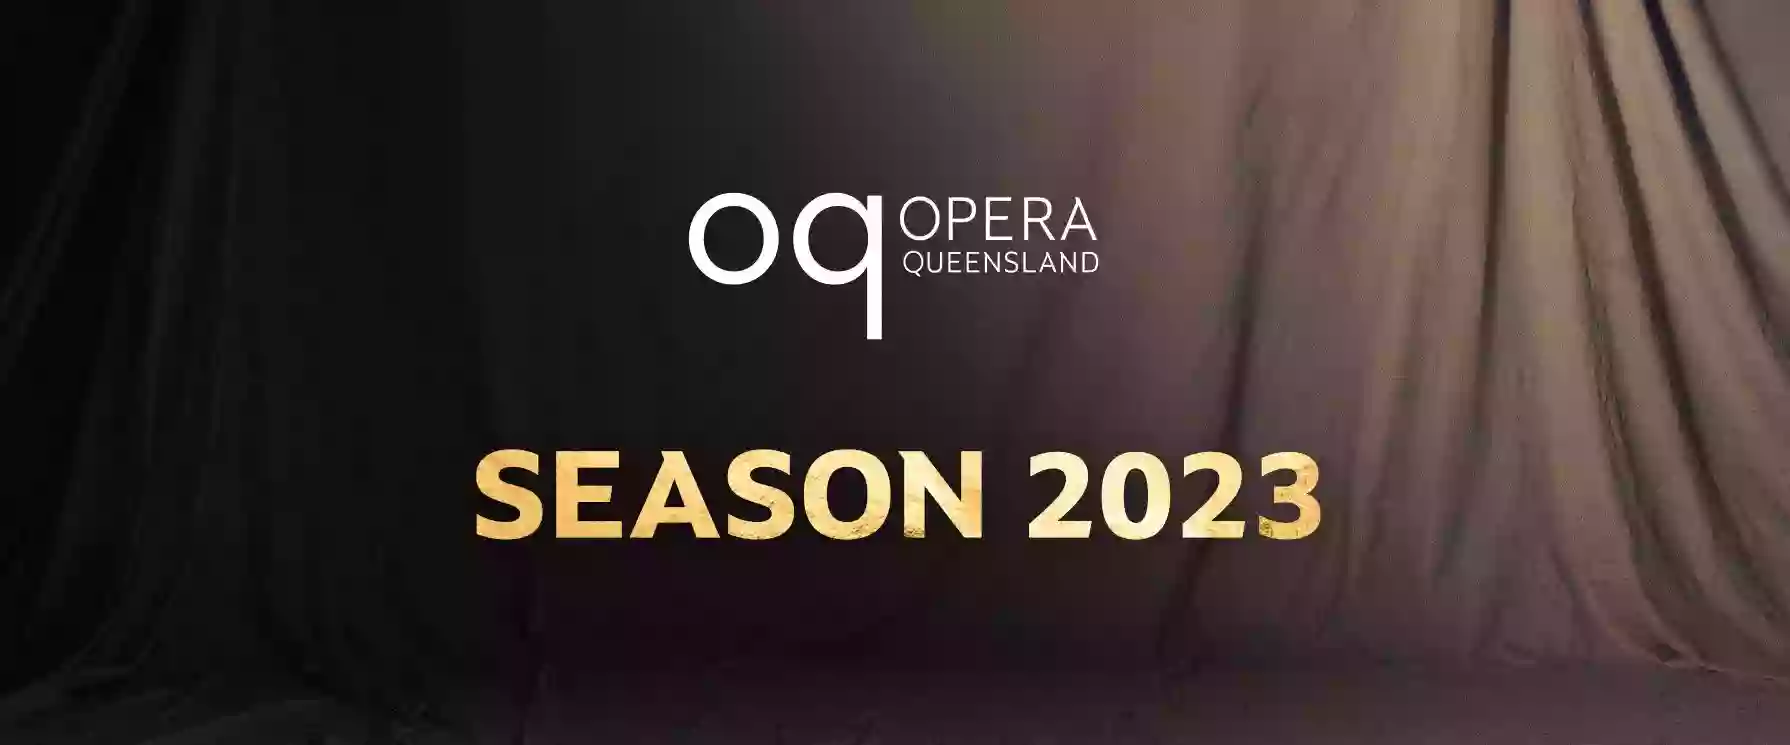 Opera Queensland